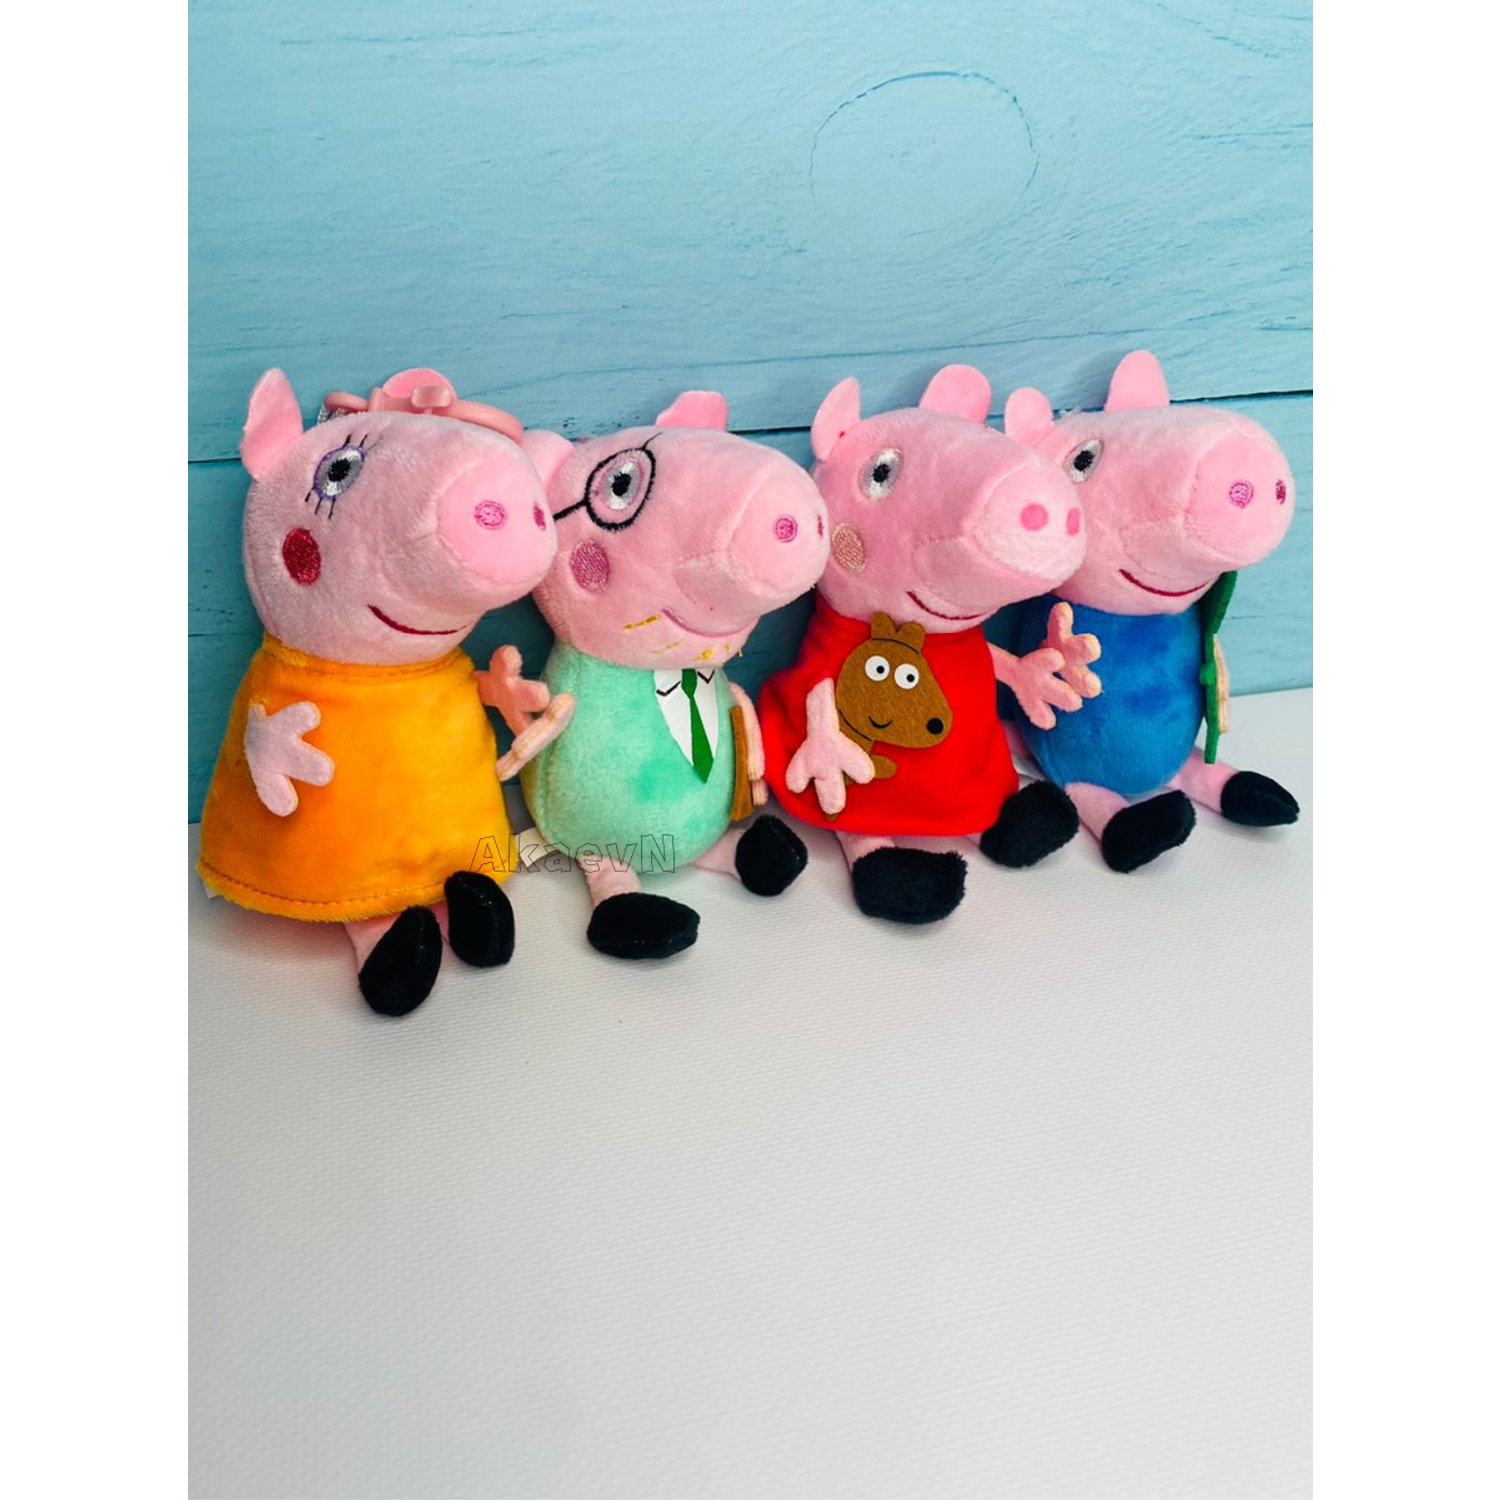 Мягкая игрушка Peppa Pig набор 4 героя - фото 1